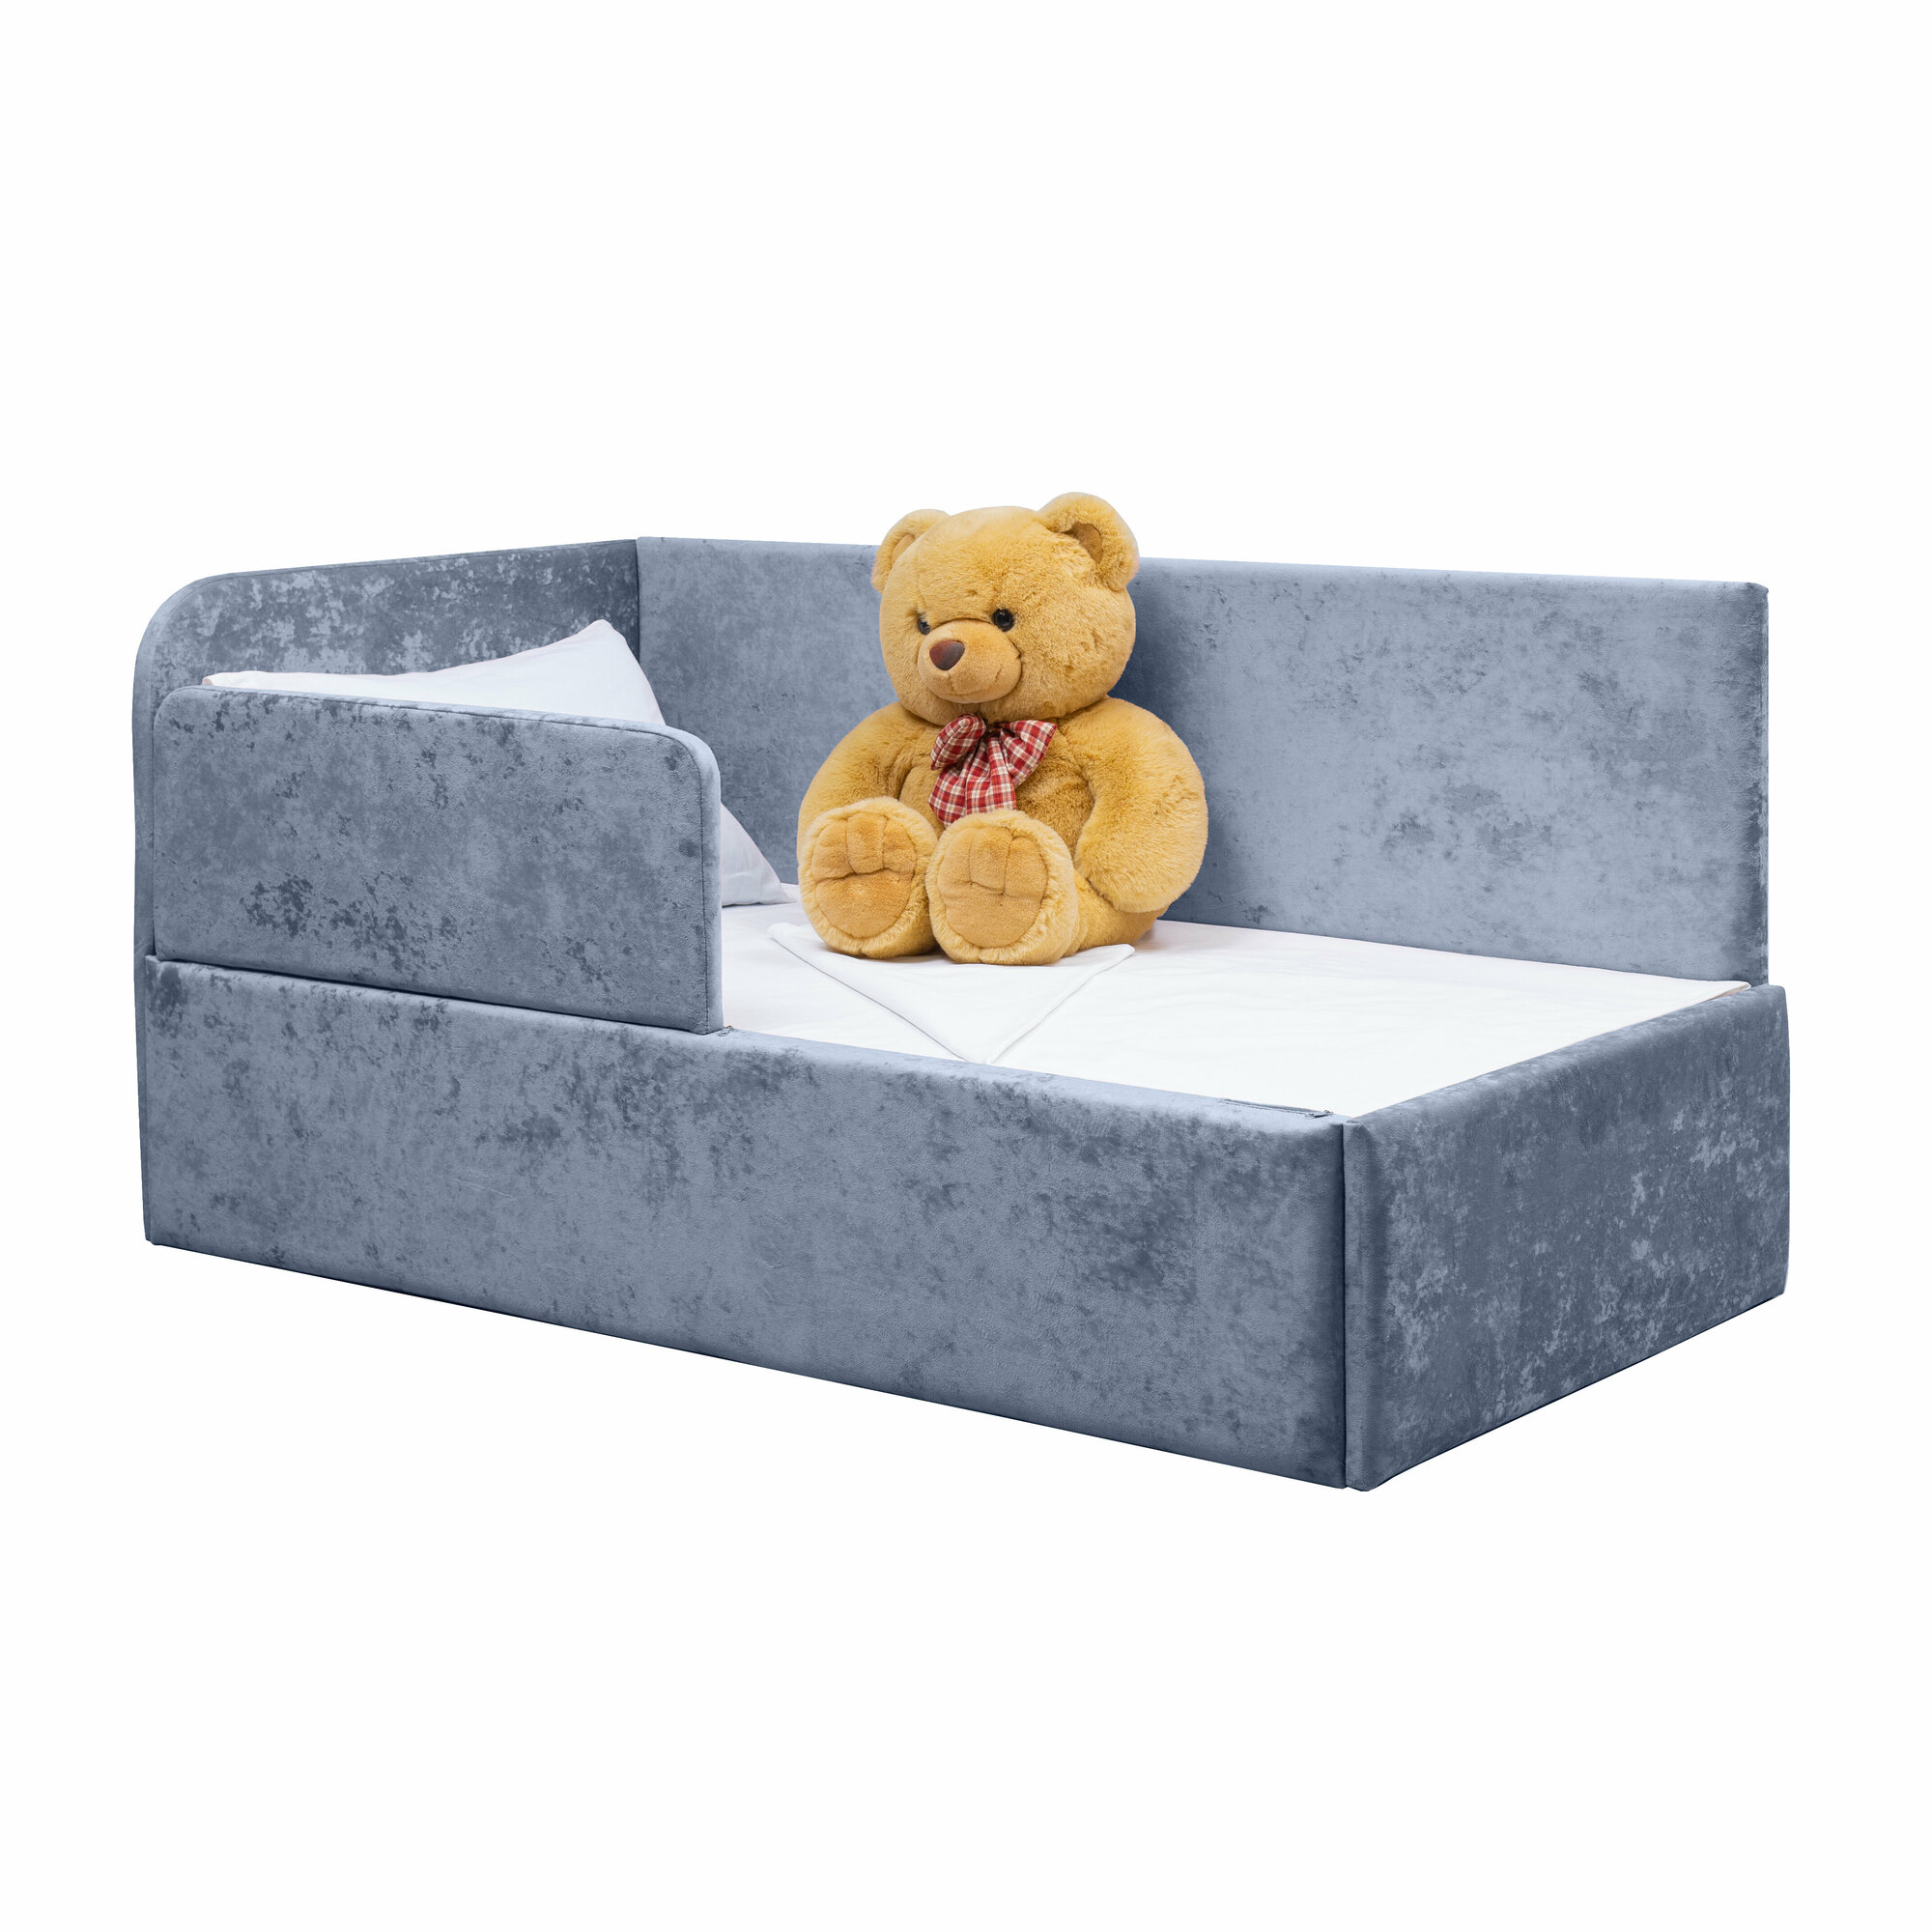 Кровать-диван Непоседа 160*80 голубая с защитным бортиком, без ящика, универсальный угол сборки